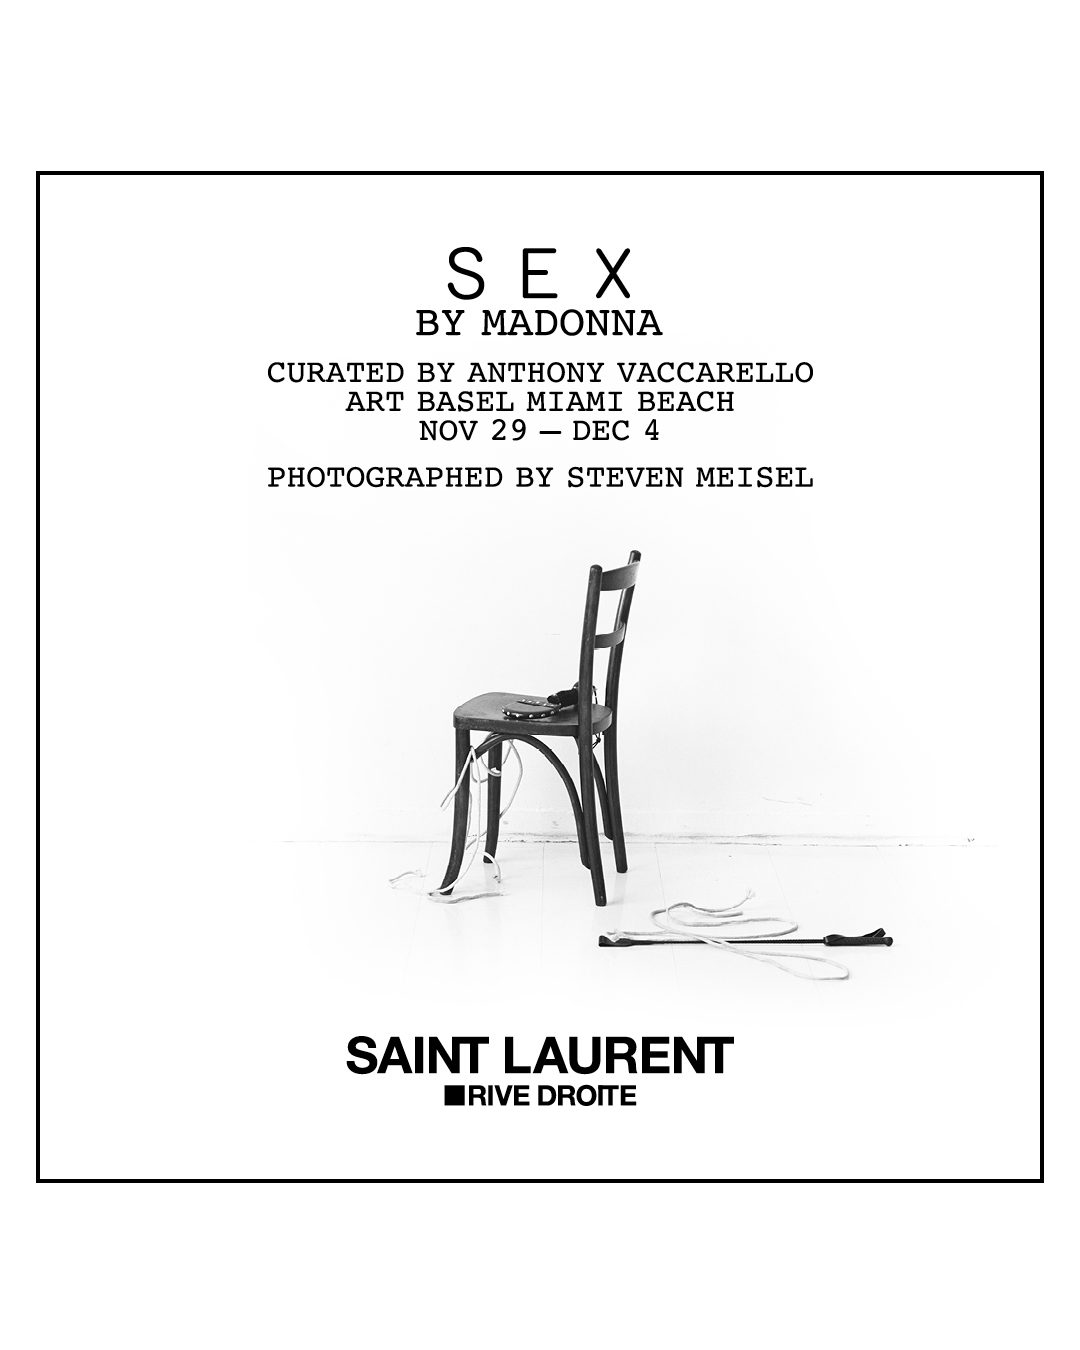 Saint Laurent celebra i 30 anni di Sex con Madonna